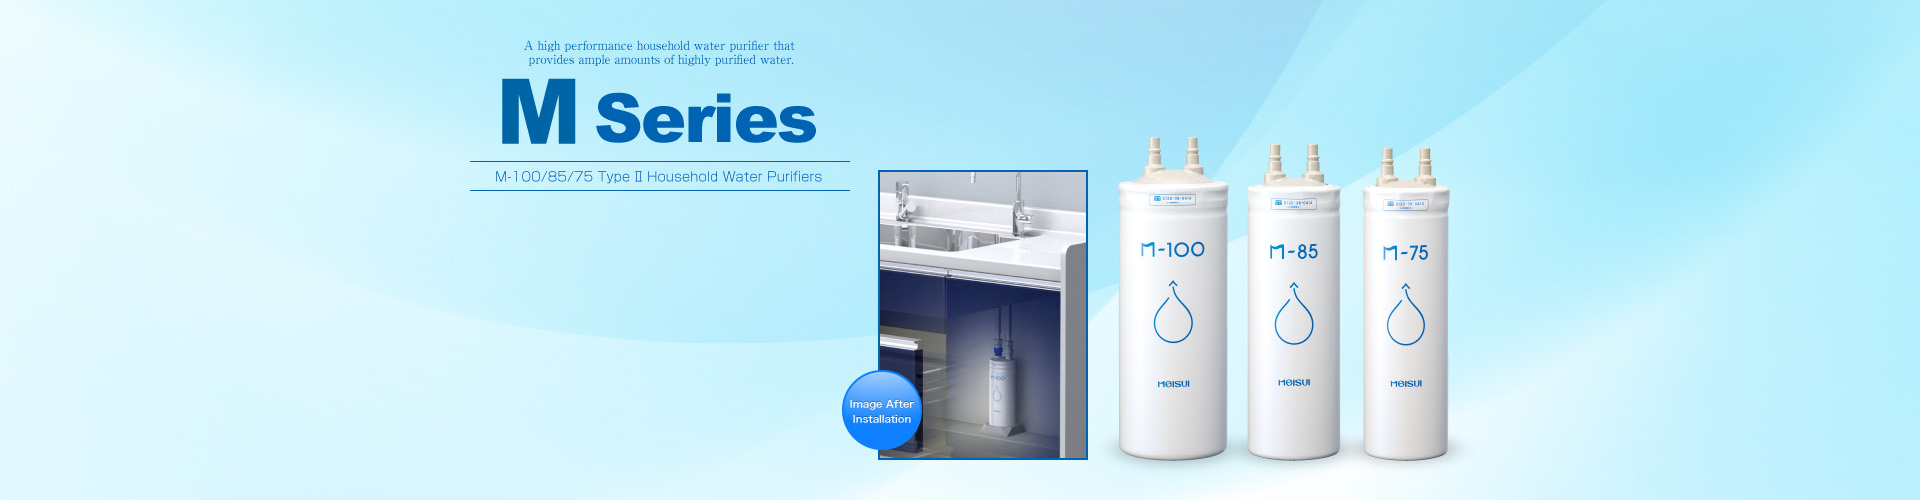 M Series Type II Household Built-in Water Purifiers